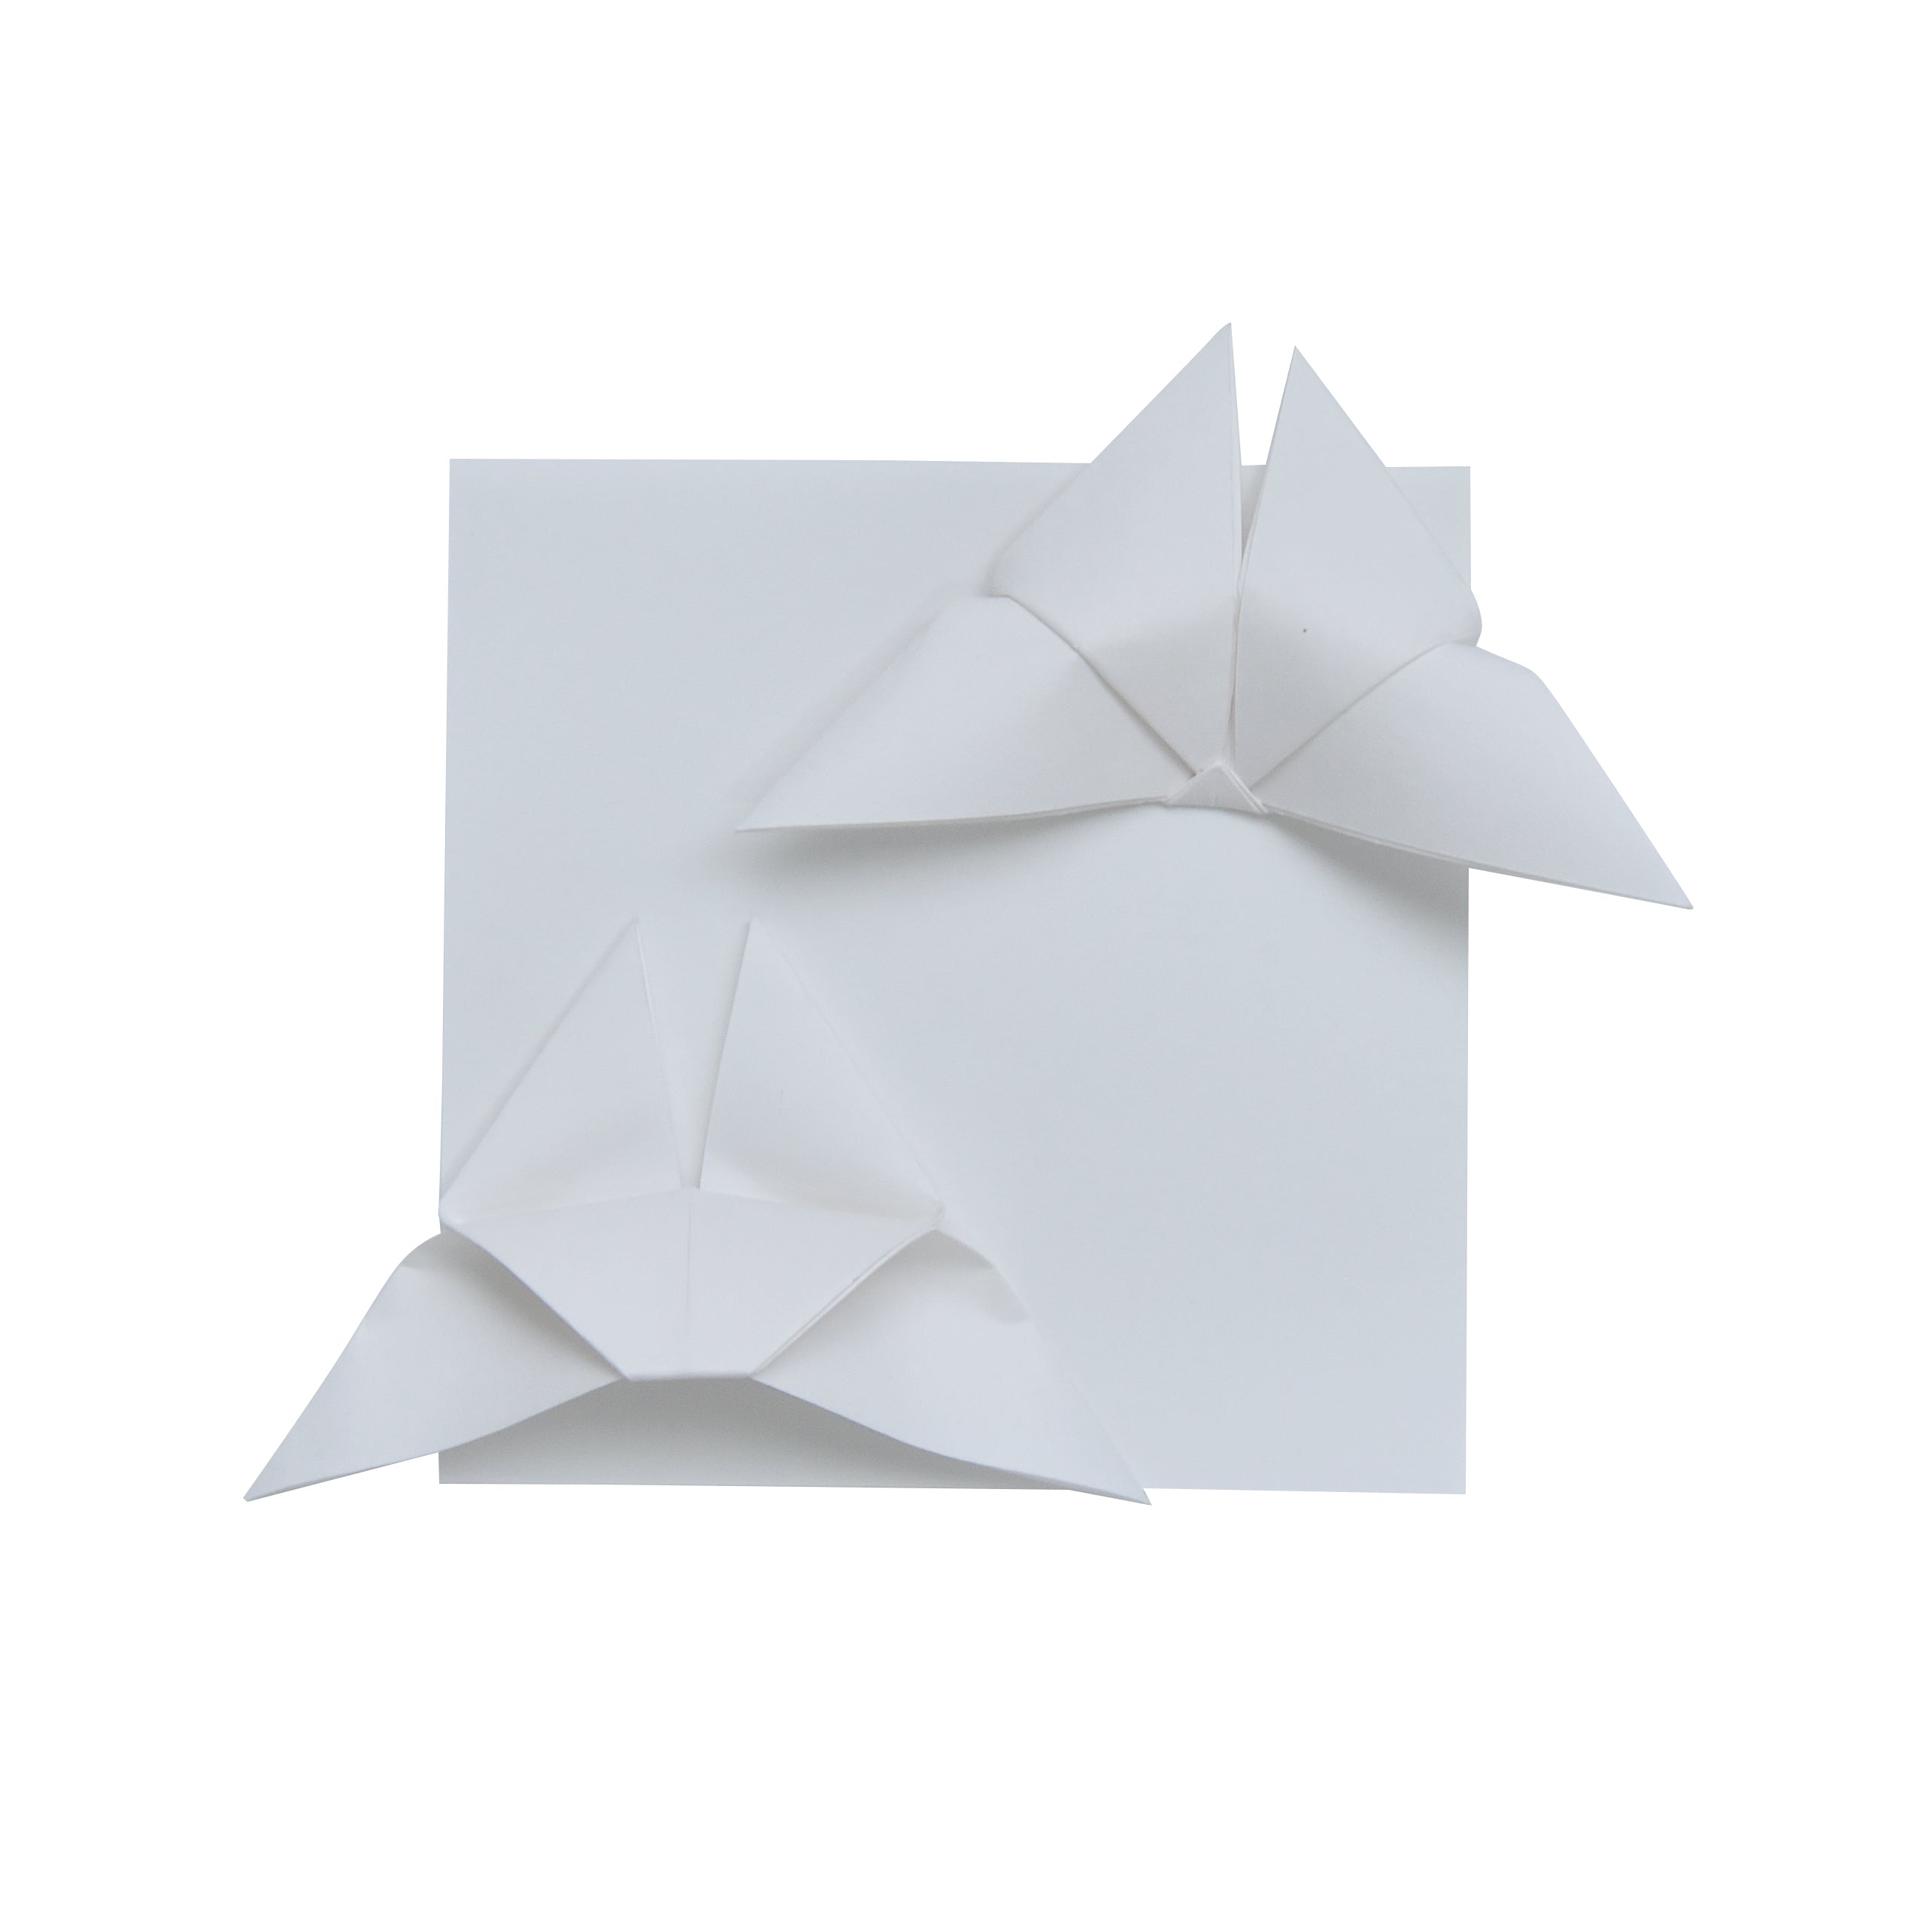 100 hojas de papel de origami marfil - 3x3 pulgadas - Paquete cuadrado de papel para plegar, grullas de papel de origami, decoración de origami